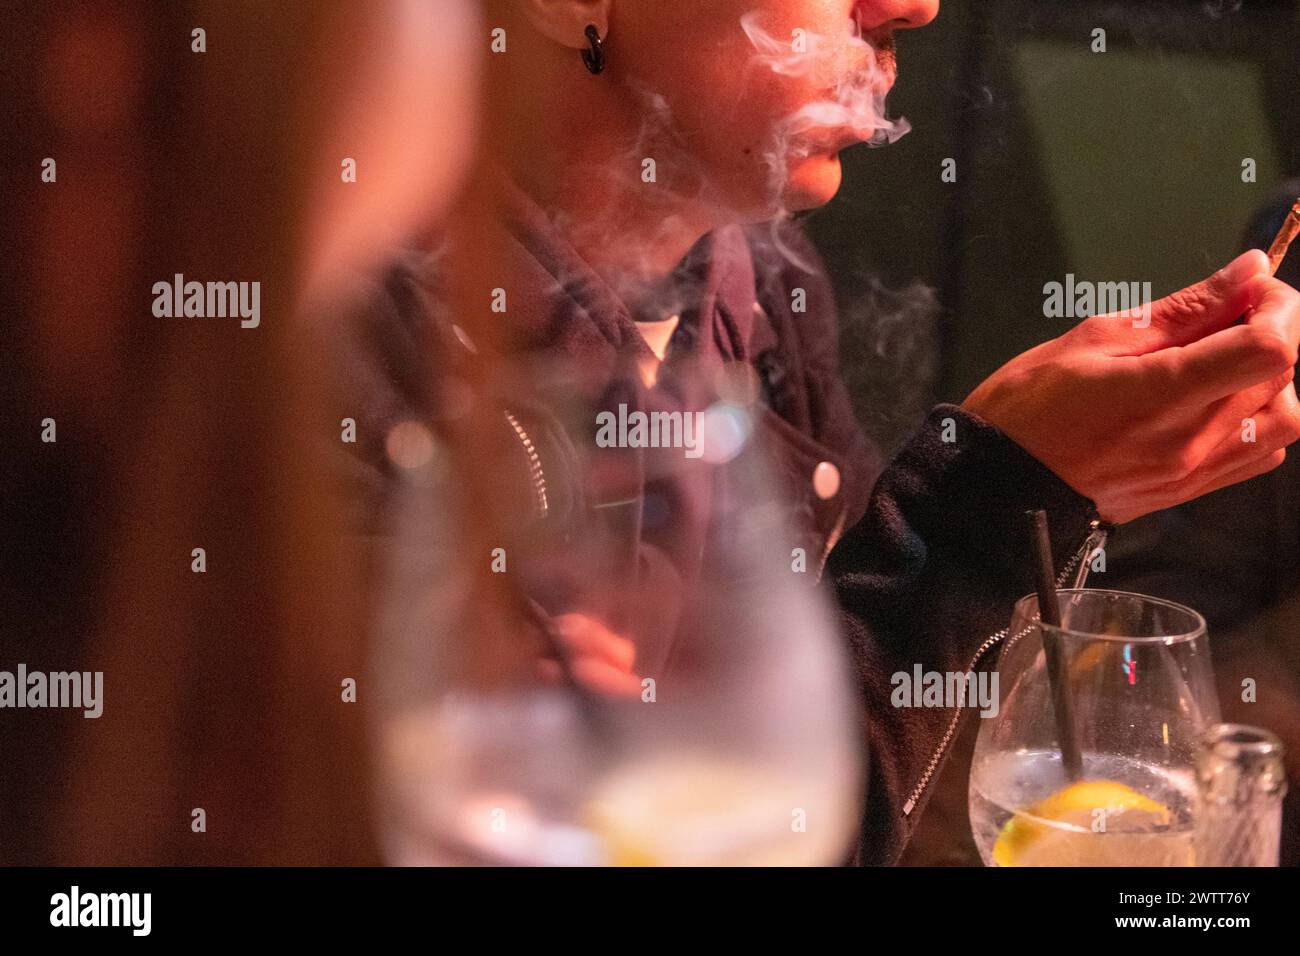 Eine Person atmet Rauch aus, während sie ihr Smartphone an einem schwach beleuchteten Tisch durchsucht. Stockfoto